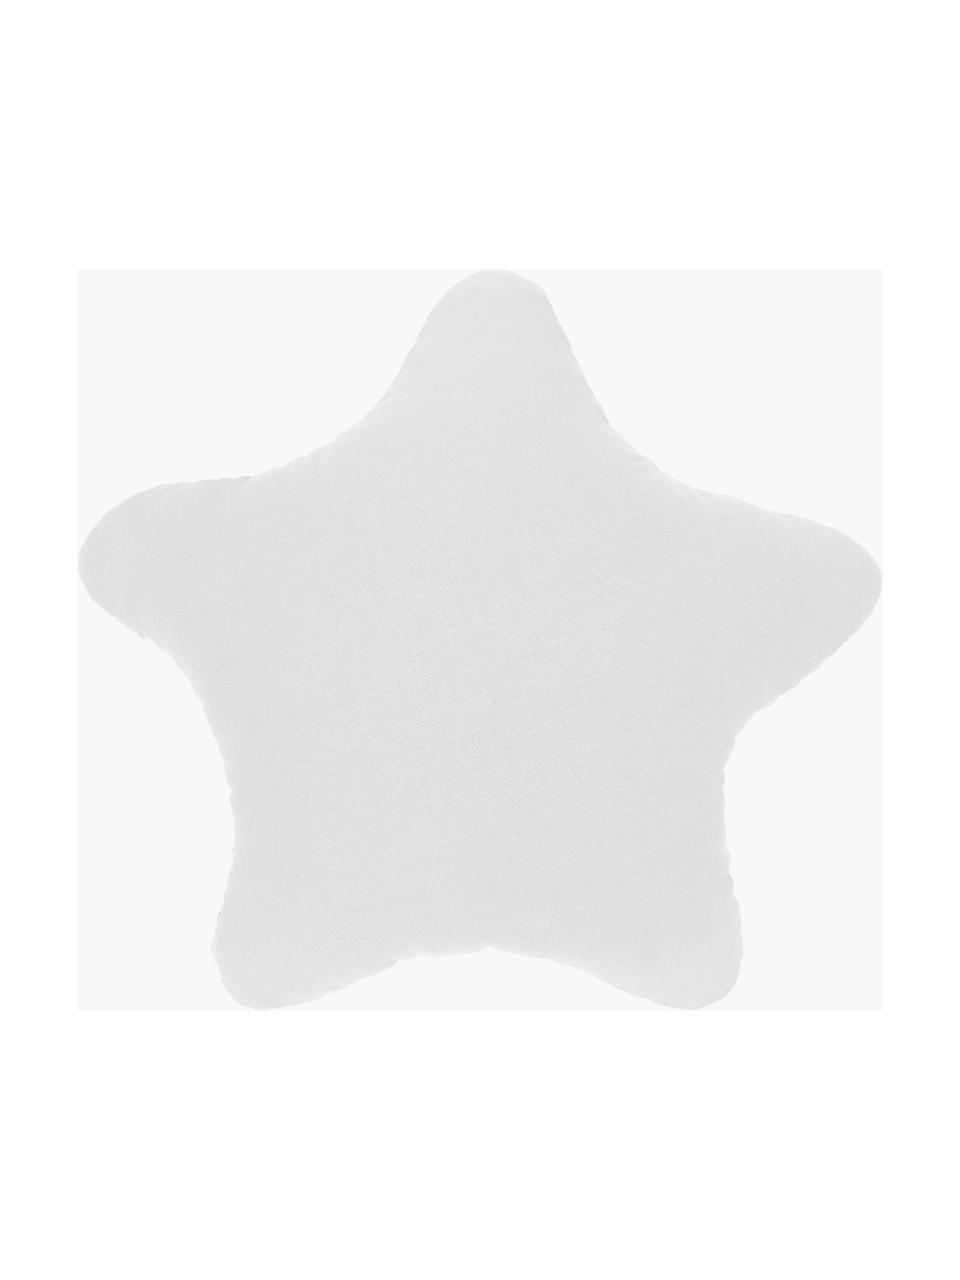 Poduszka z dzianiny Sparkle, Biały, S 45 x D 45 cm